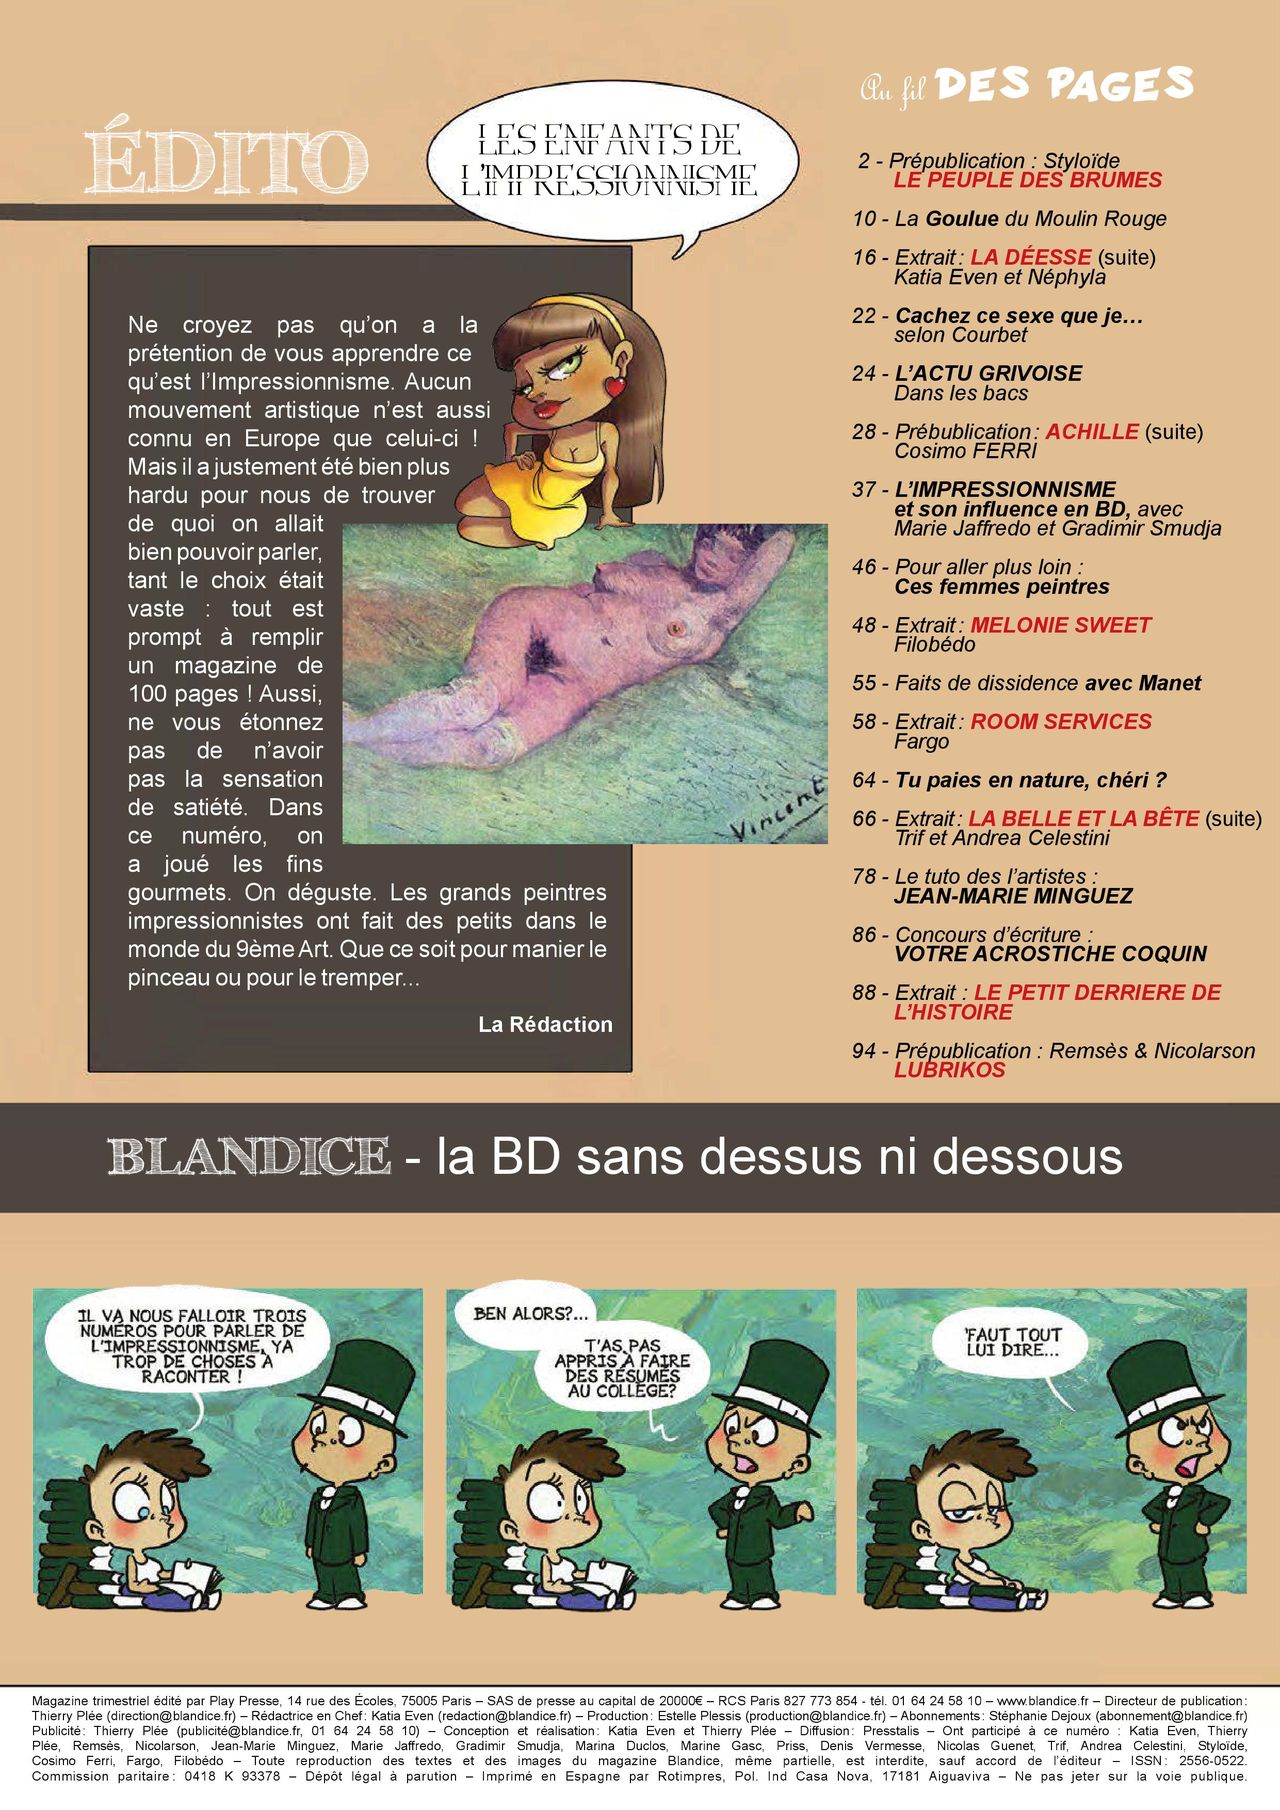 Blandice - 06 - Limpressionnisme dans la bd numero d'image 2